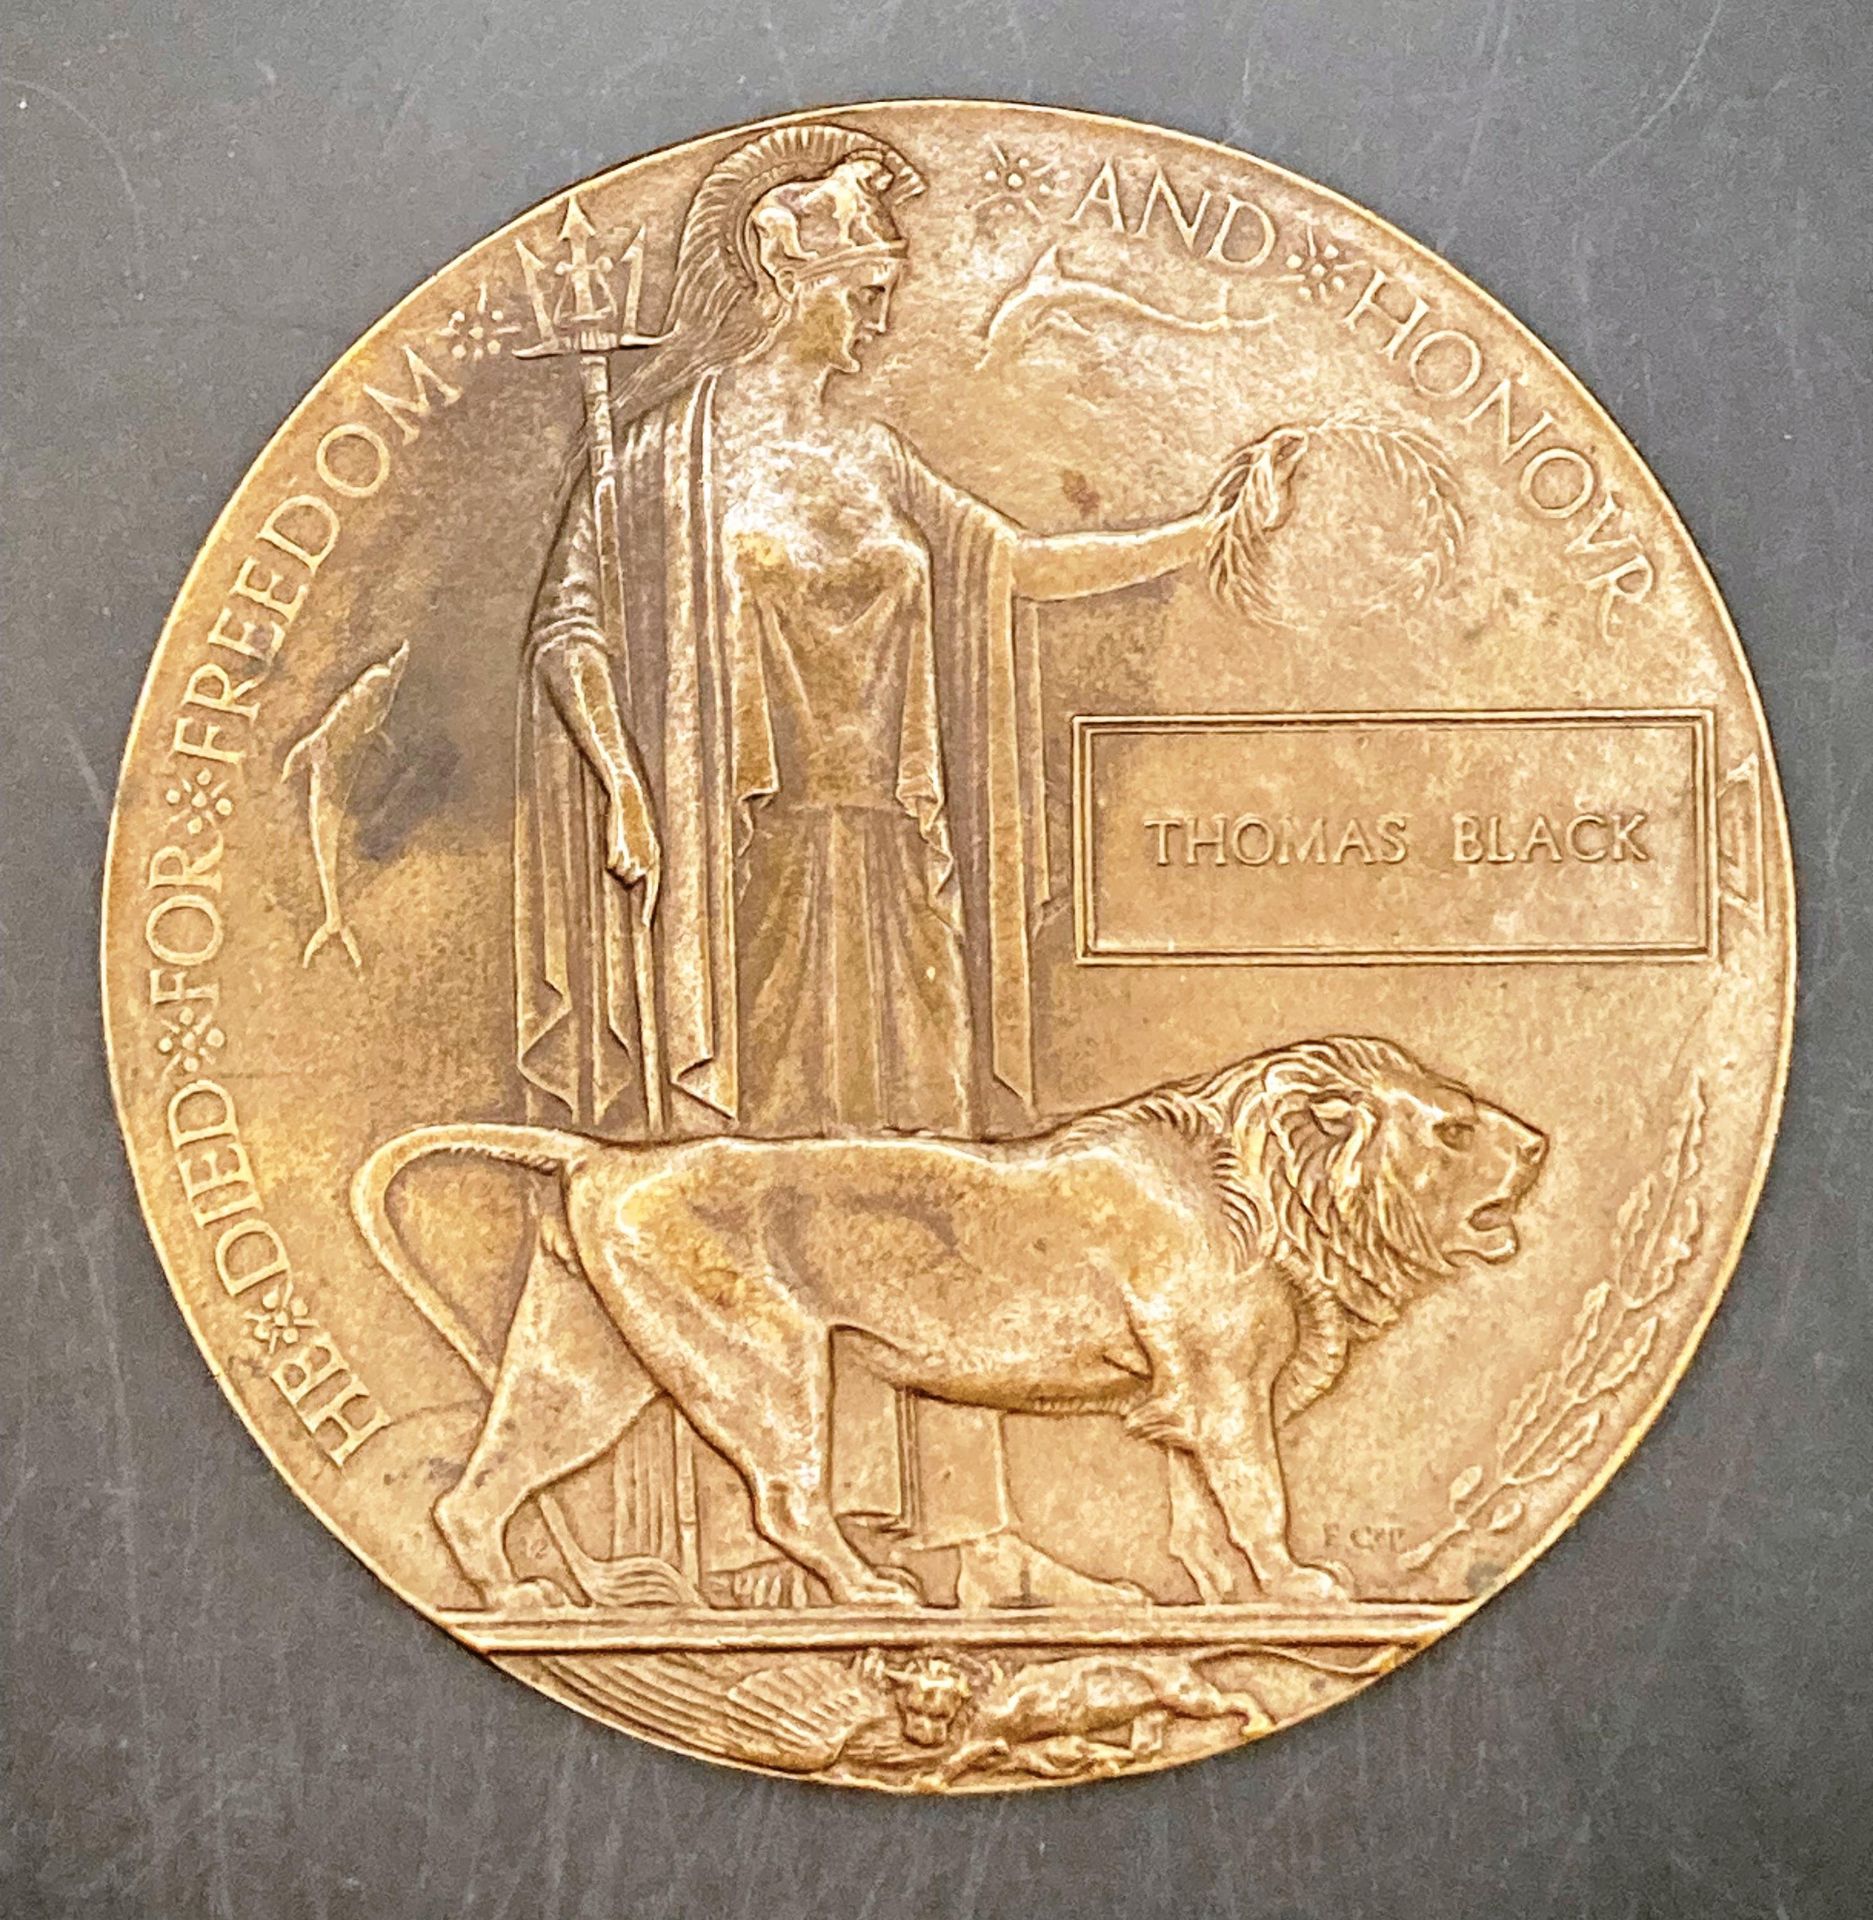 Thomas Black World War I bronze memorial plaque 12cm diameter (Saleroom location: S3 GC4)